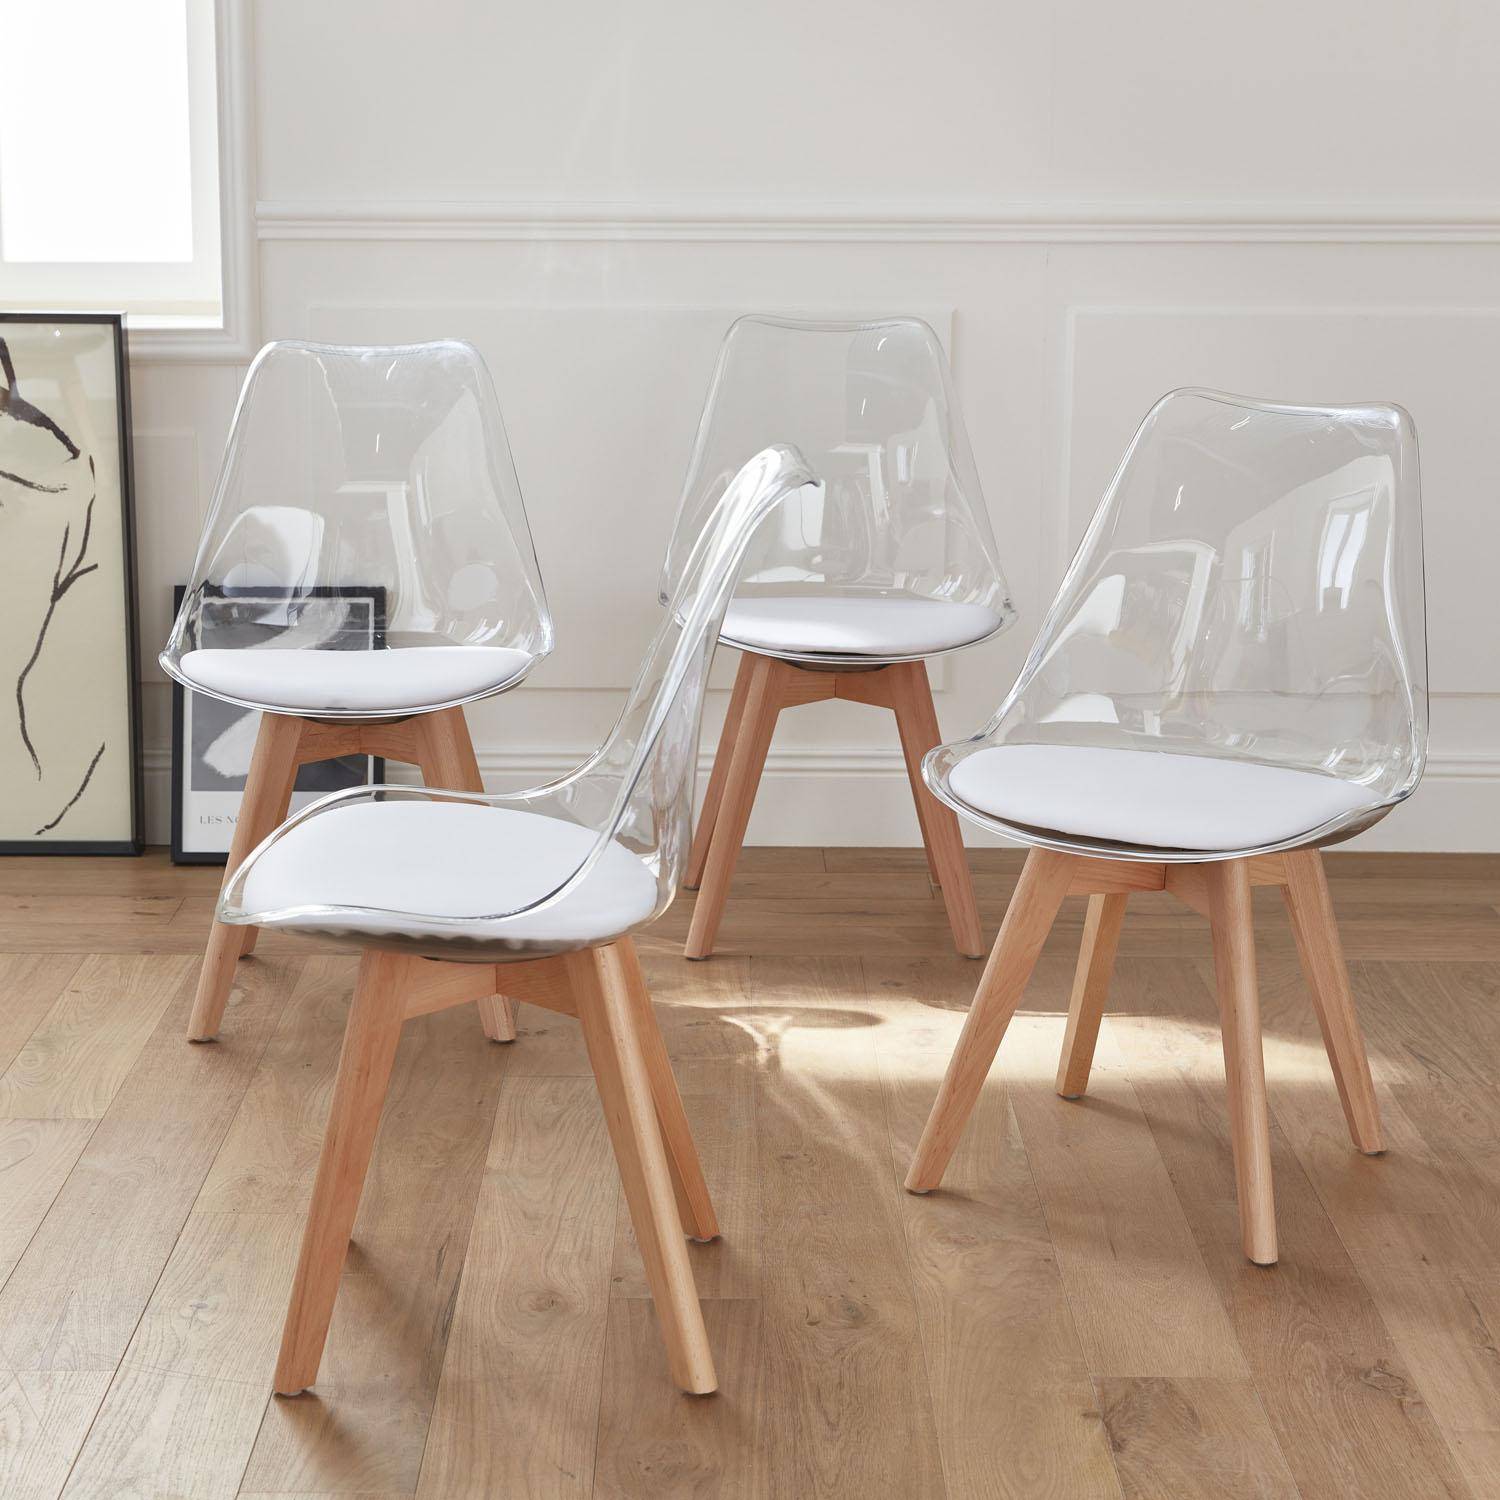 Lot de 4 chaises scandinaves - Lagertha - pieds bois, fauteuils 1 place, coussin blanc, coque transparente  Photo1